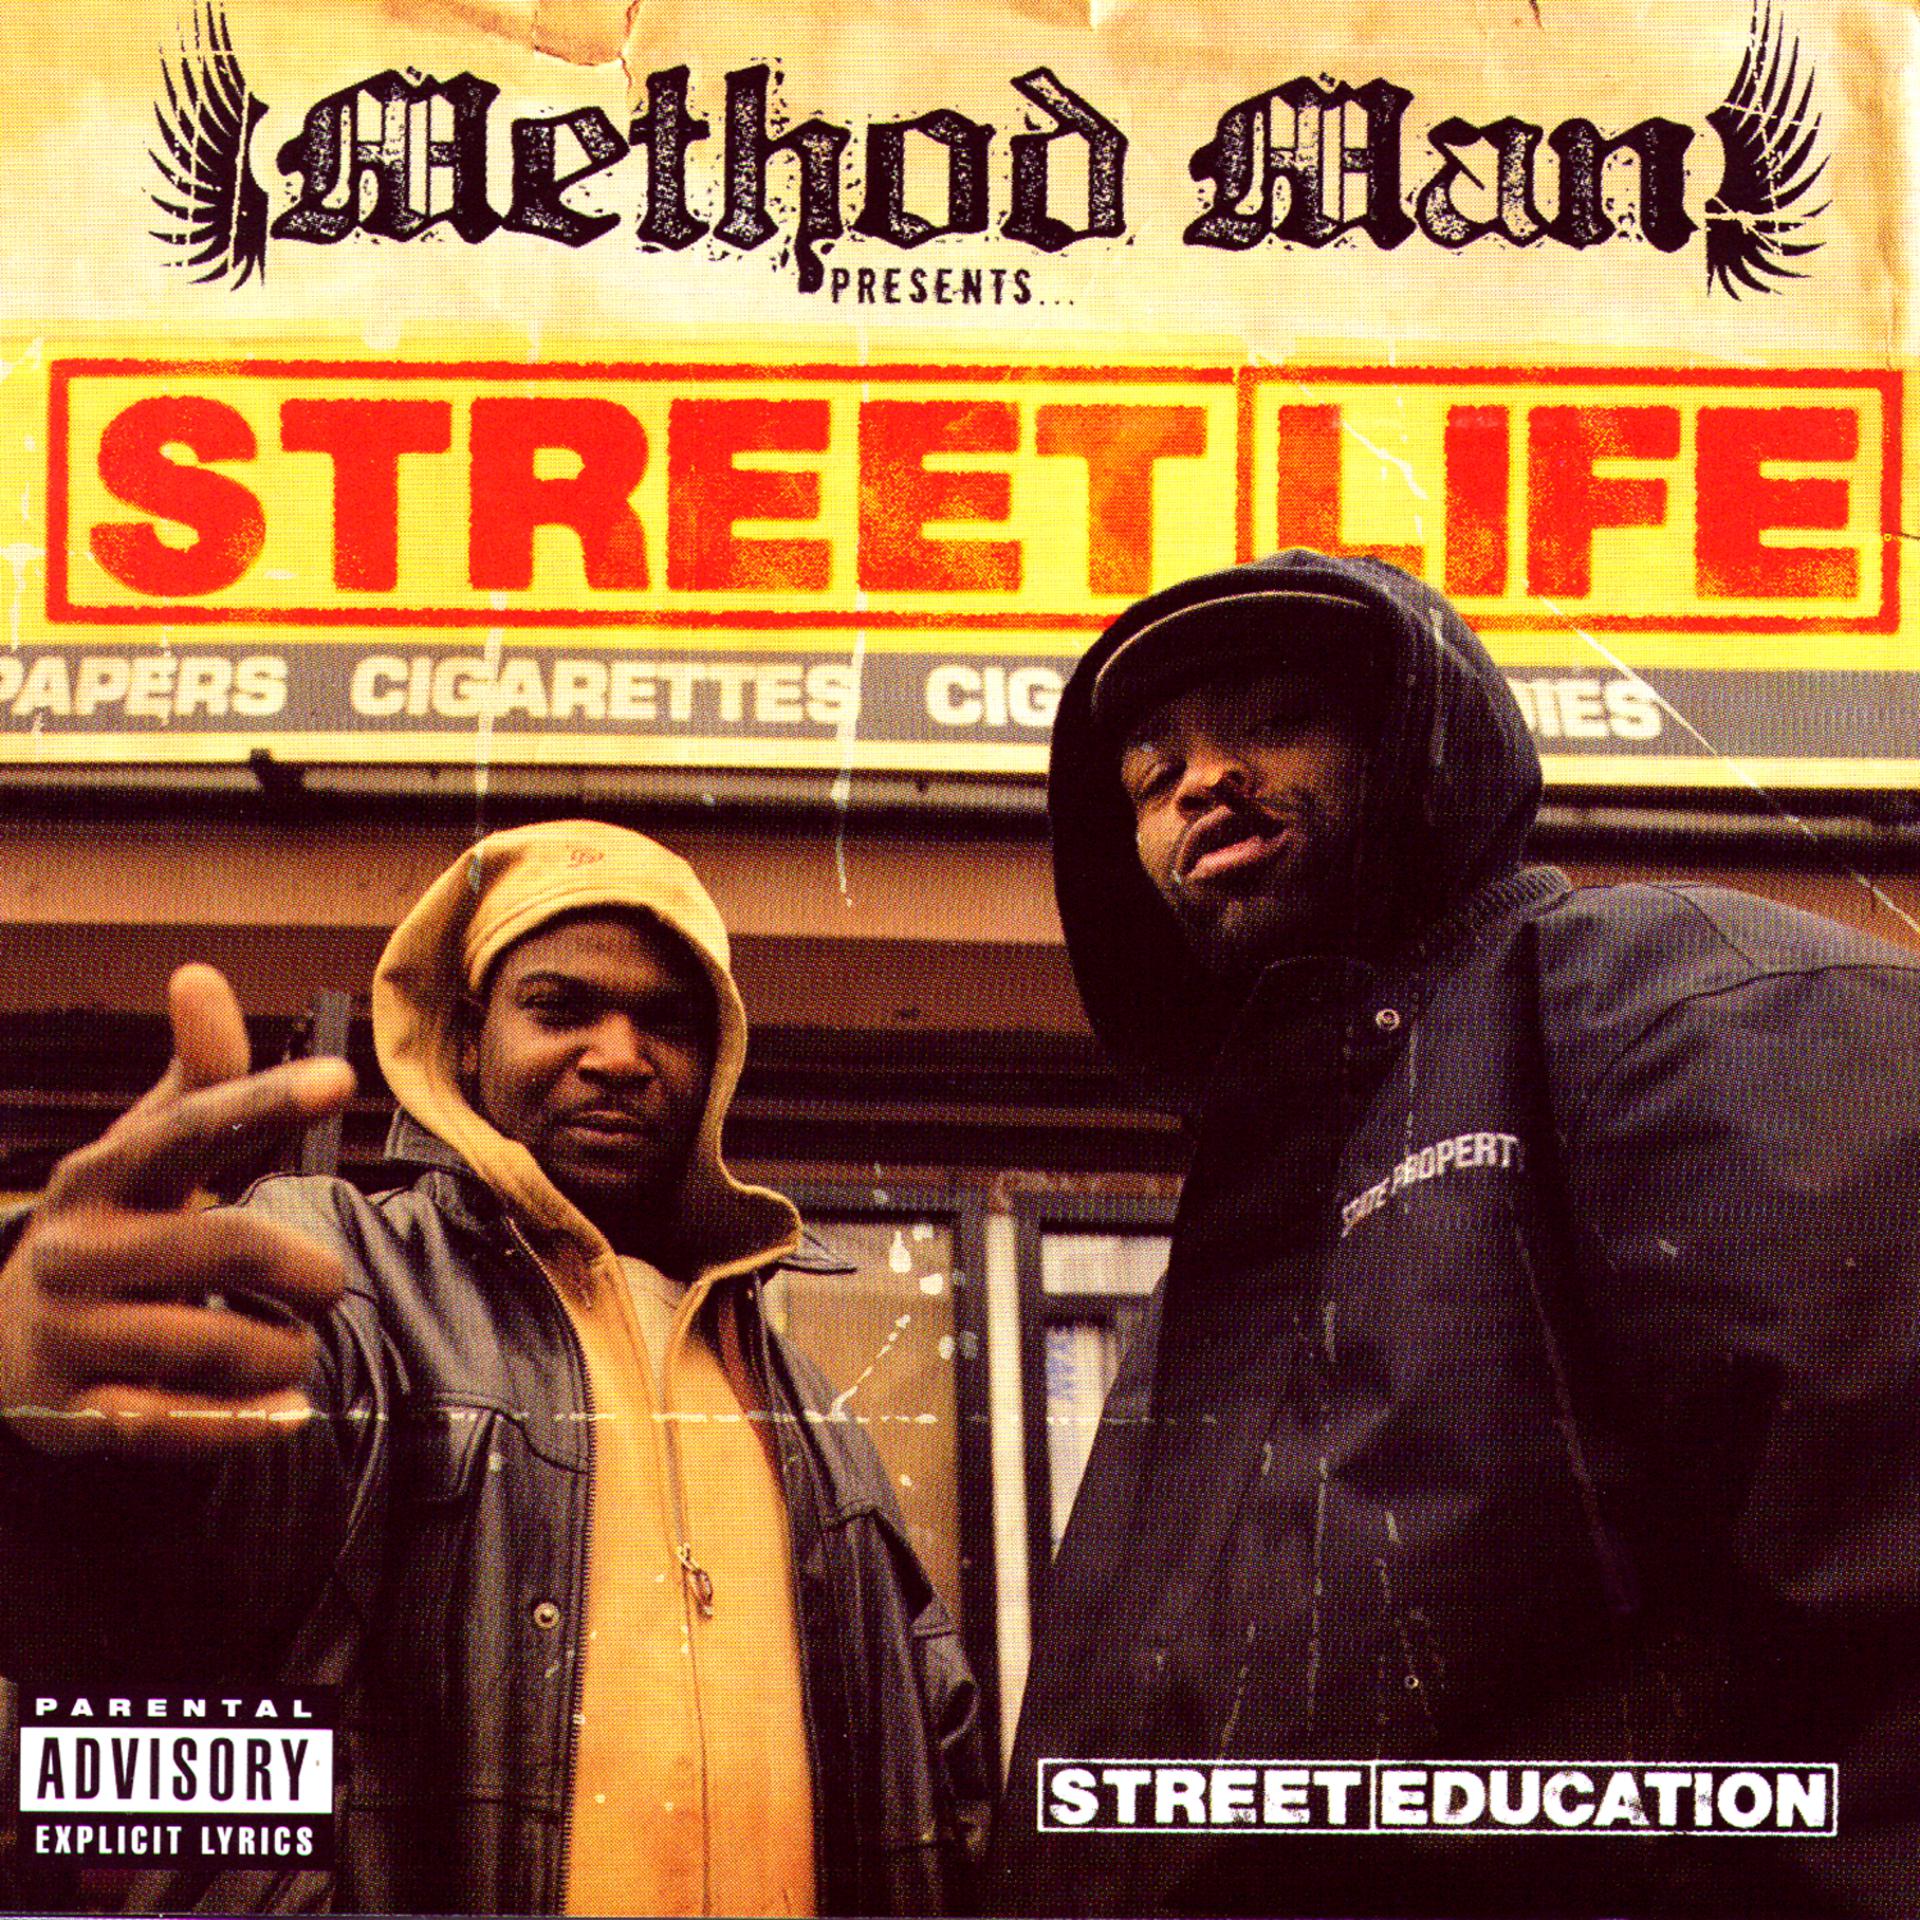 Street ed. Streetlife. Method man. Method man Redman альбомы. Street Life исполнители.